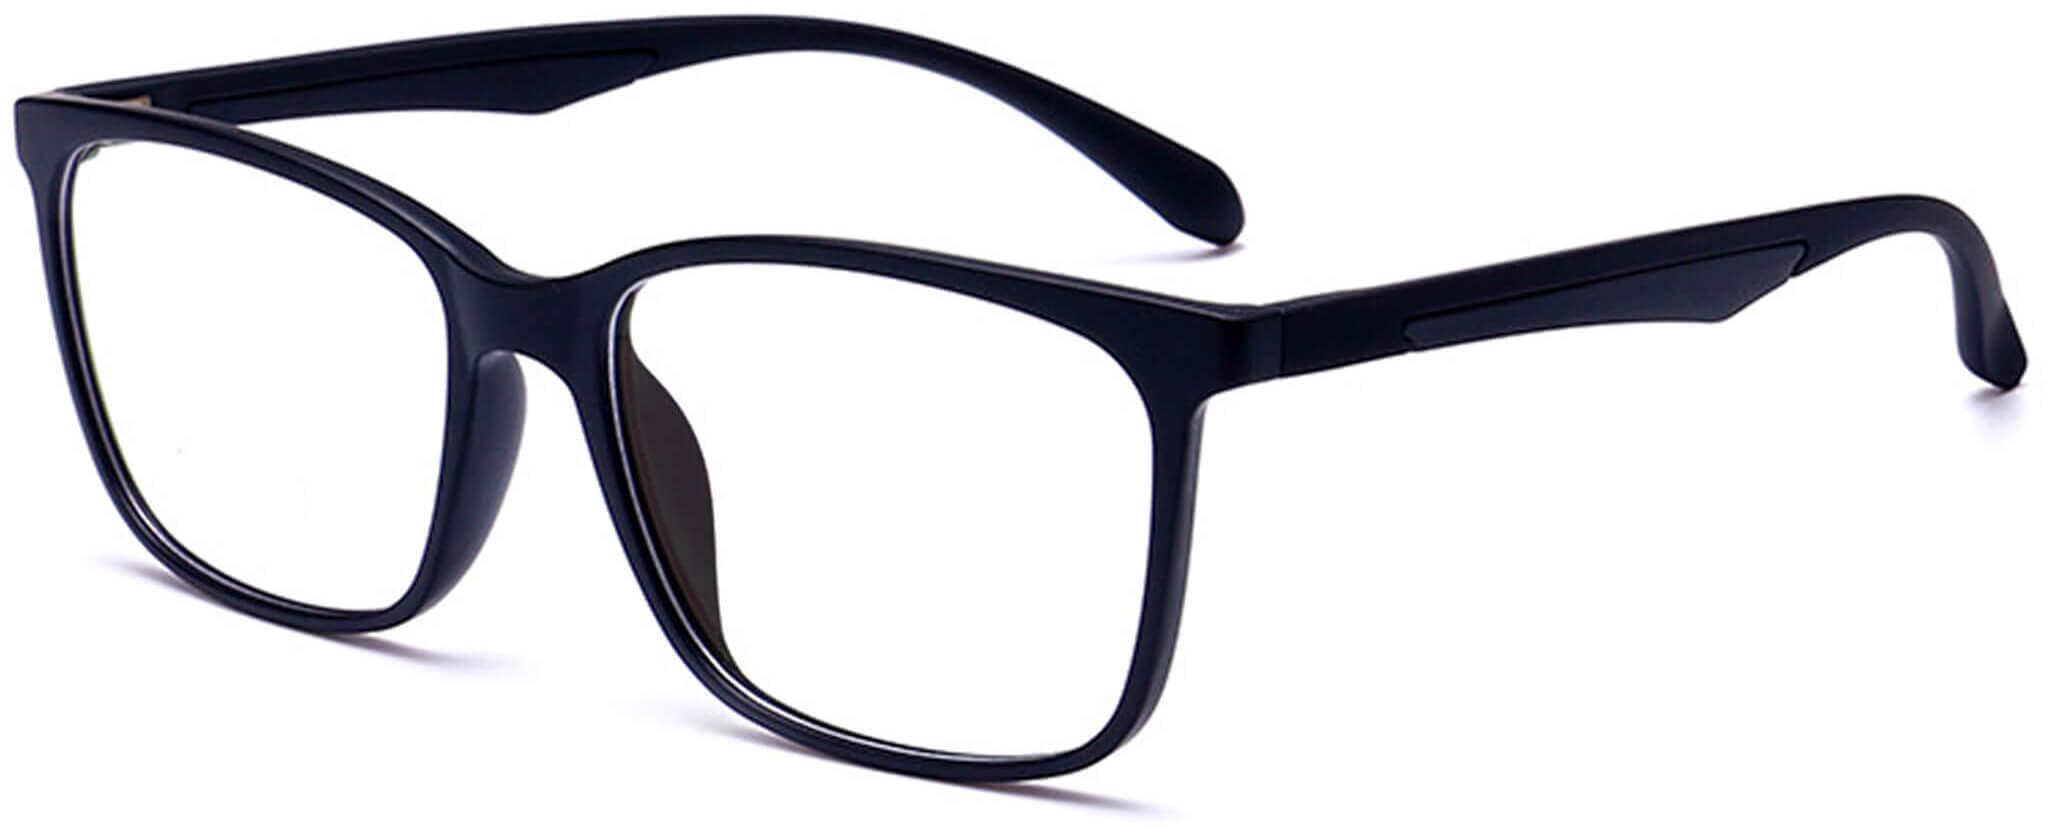 Buy New Specs Rectangular Sunglasses Black, Black For Men & Women